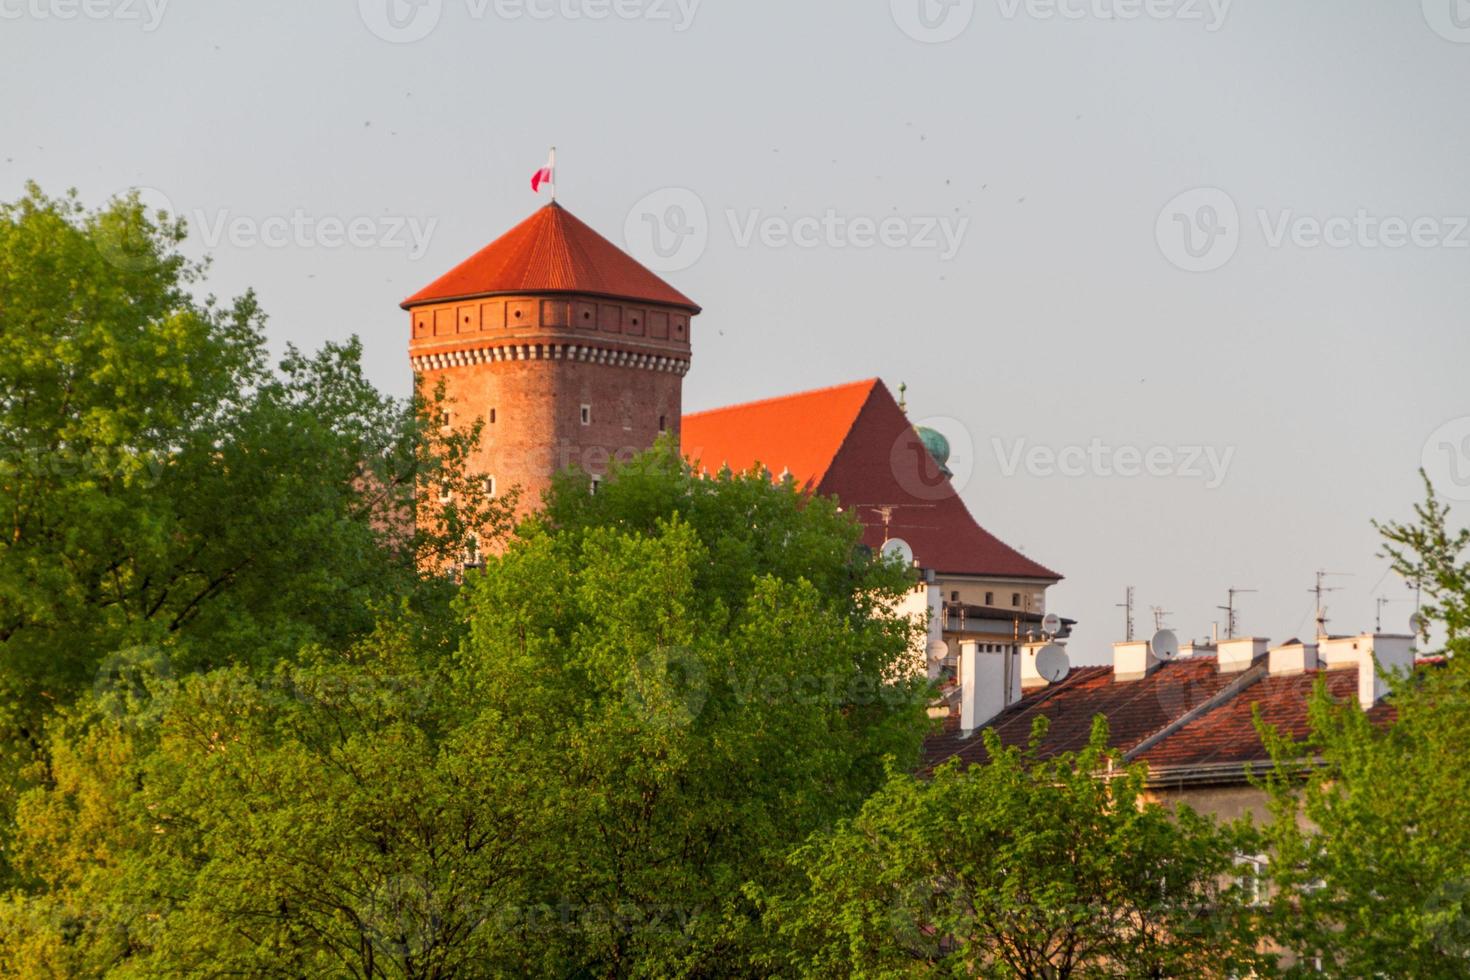 Royal castle in Wawel, Krarow photo